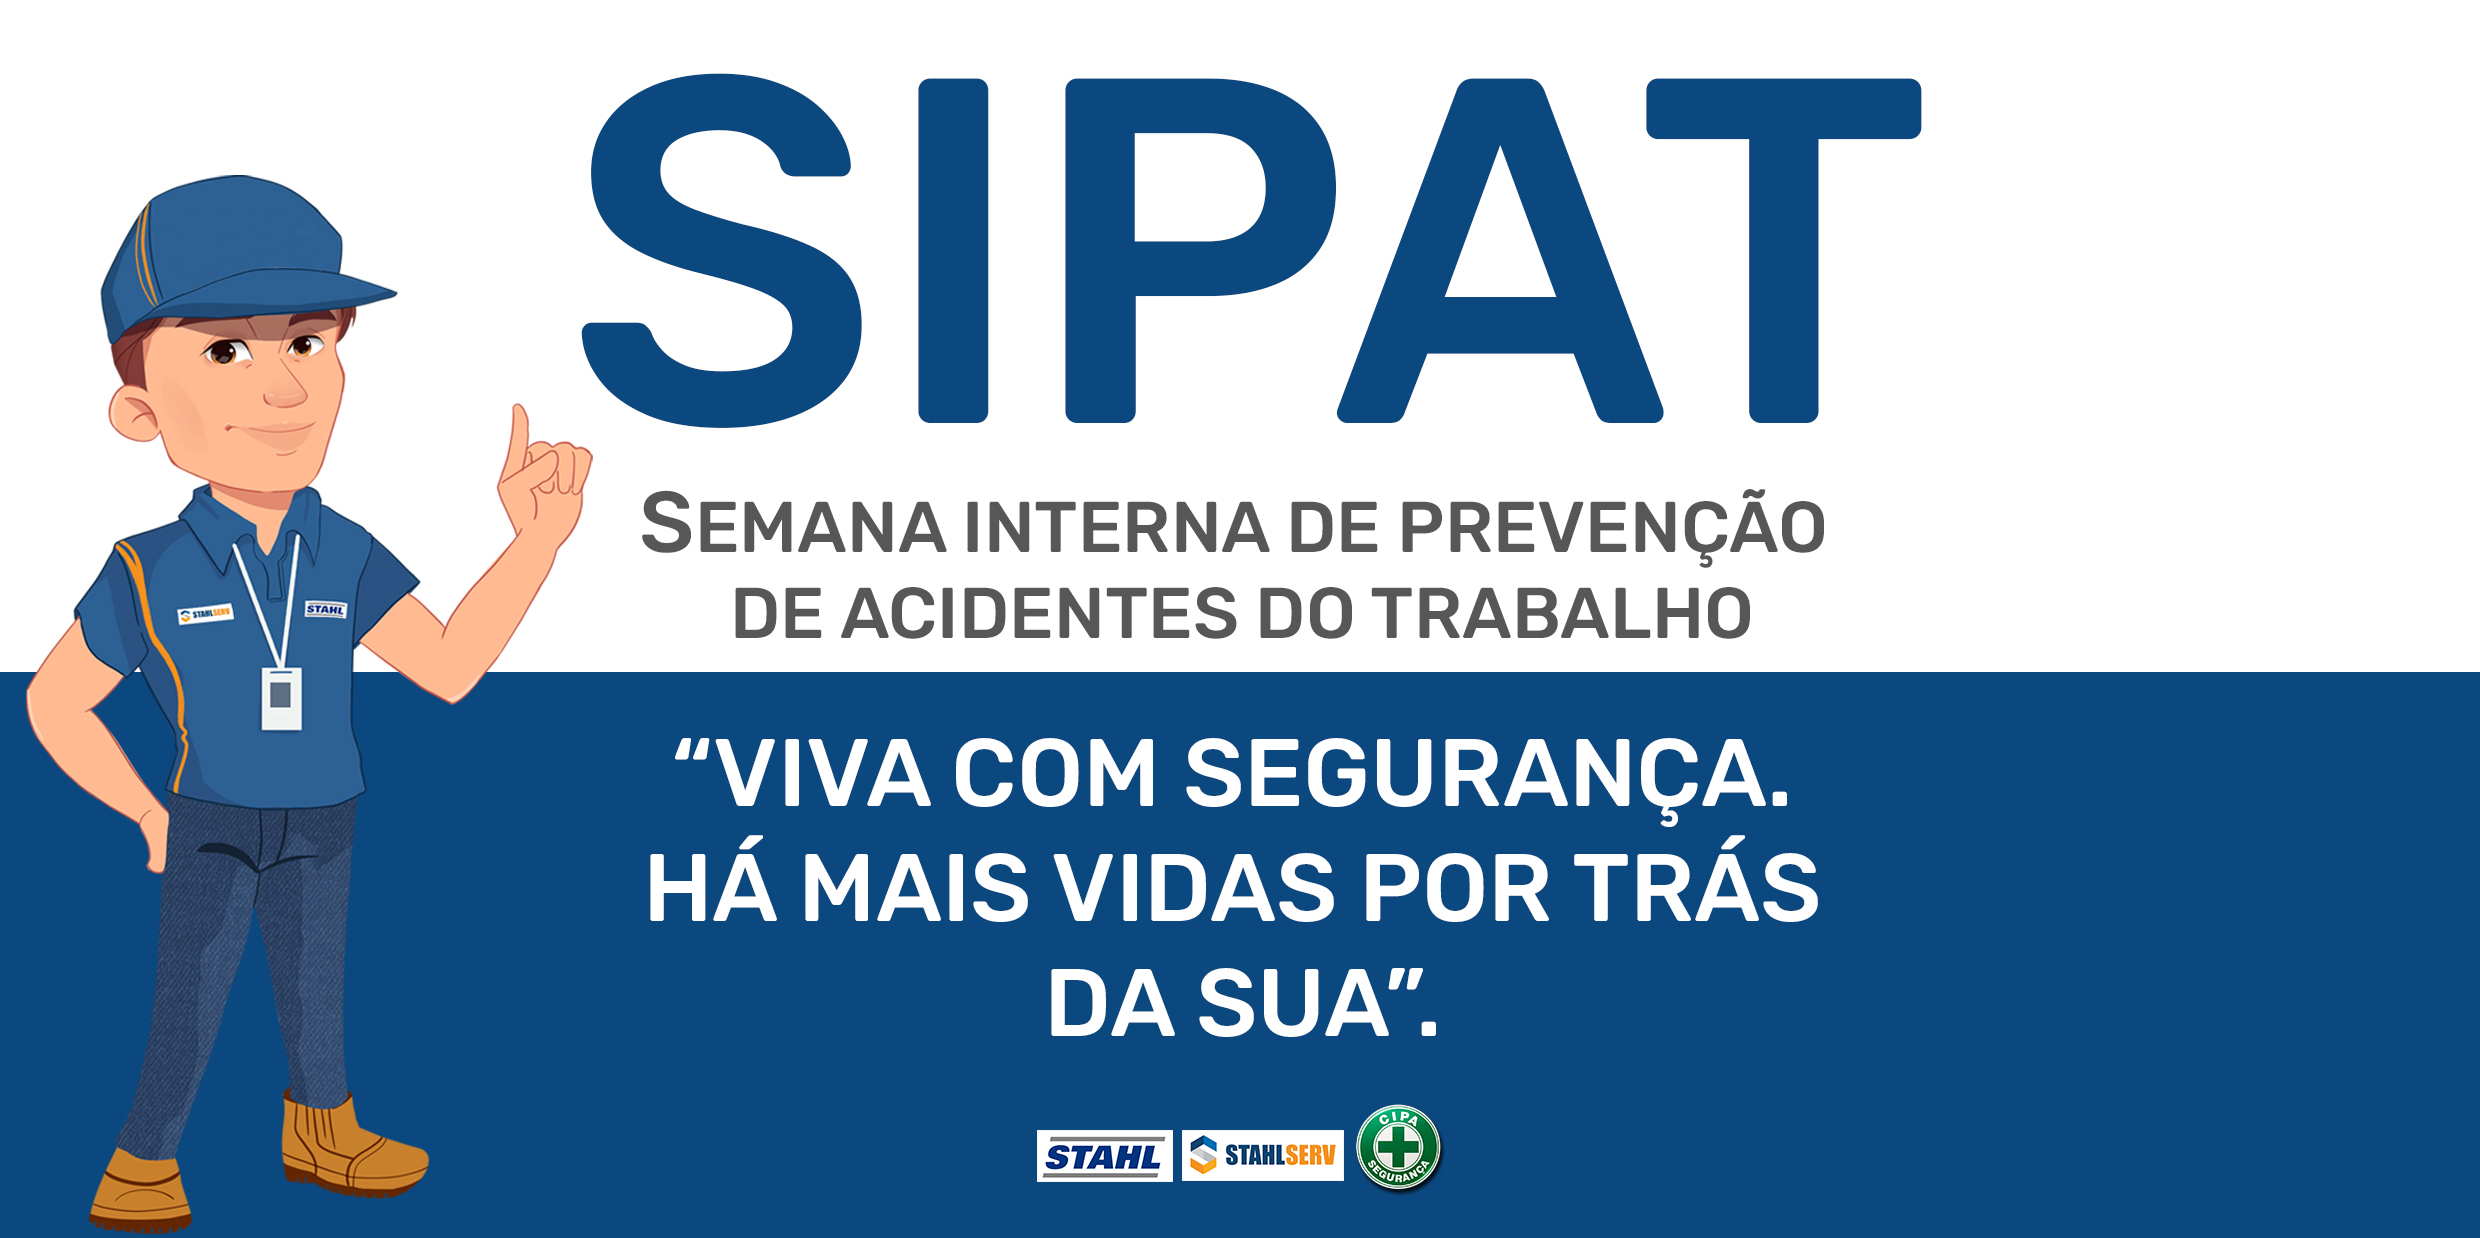 4º  Semana Interna de Prevenção de Acidentes de Trabalho (SIPAT)